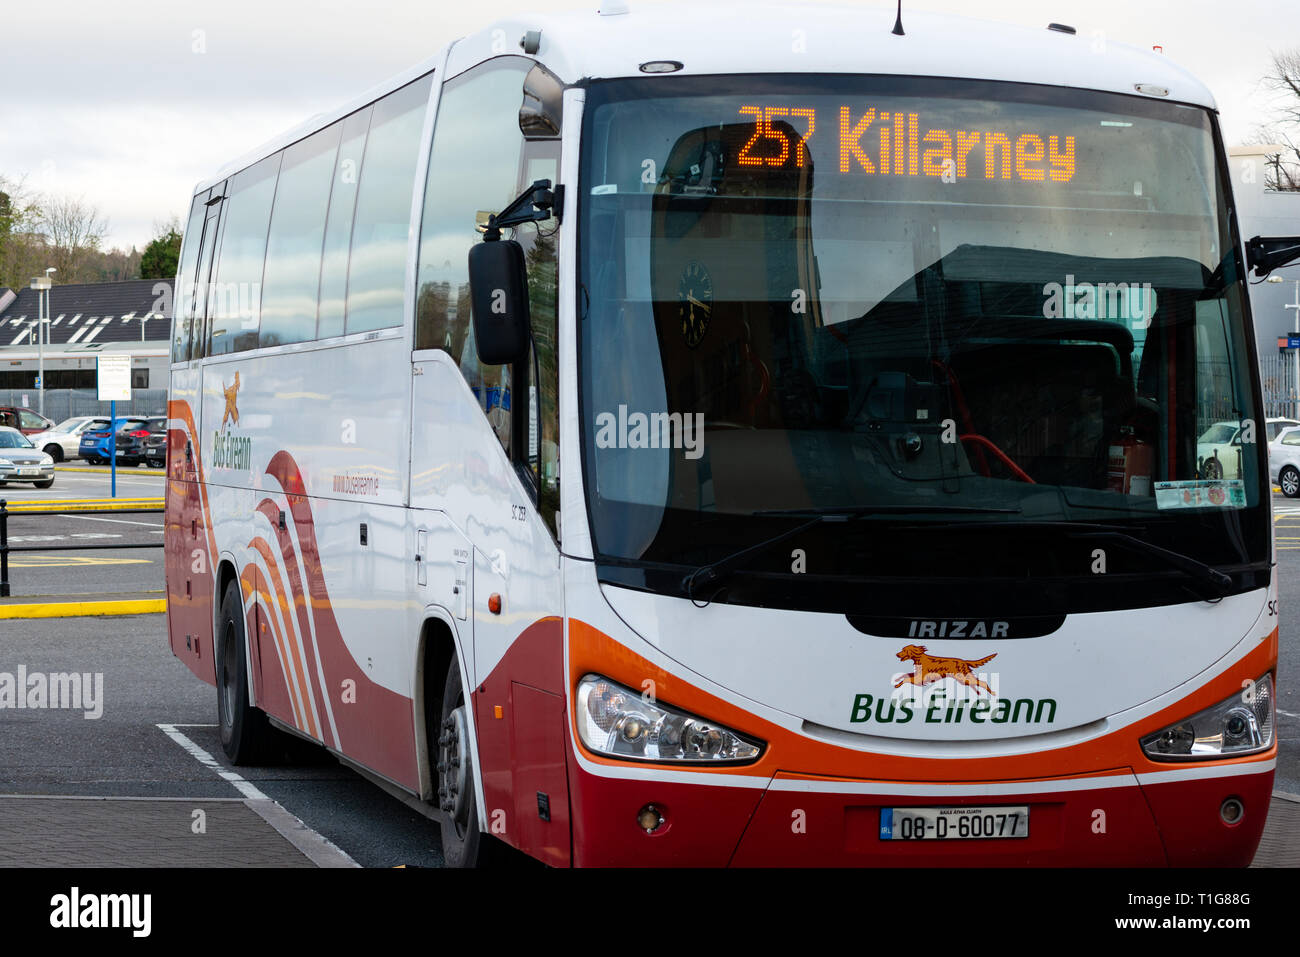 Trasporto per l'Irlanda. Parcheggiato il Bus Eireann pulmann al Killarney stazione degli autobus con '257 Killarney' service visualizzata sul DOT MATRIX Foto Stock